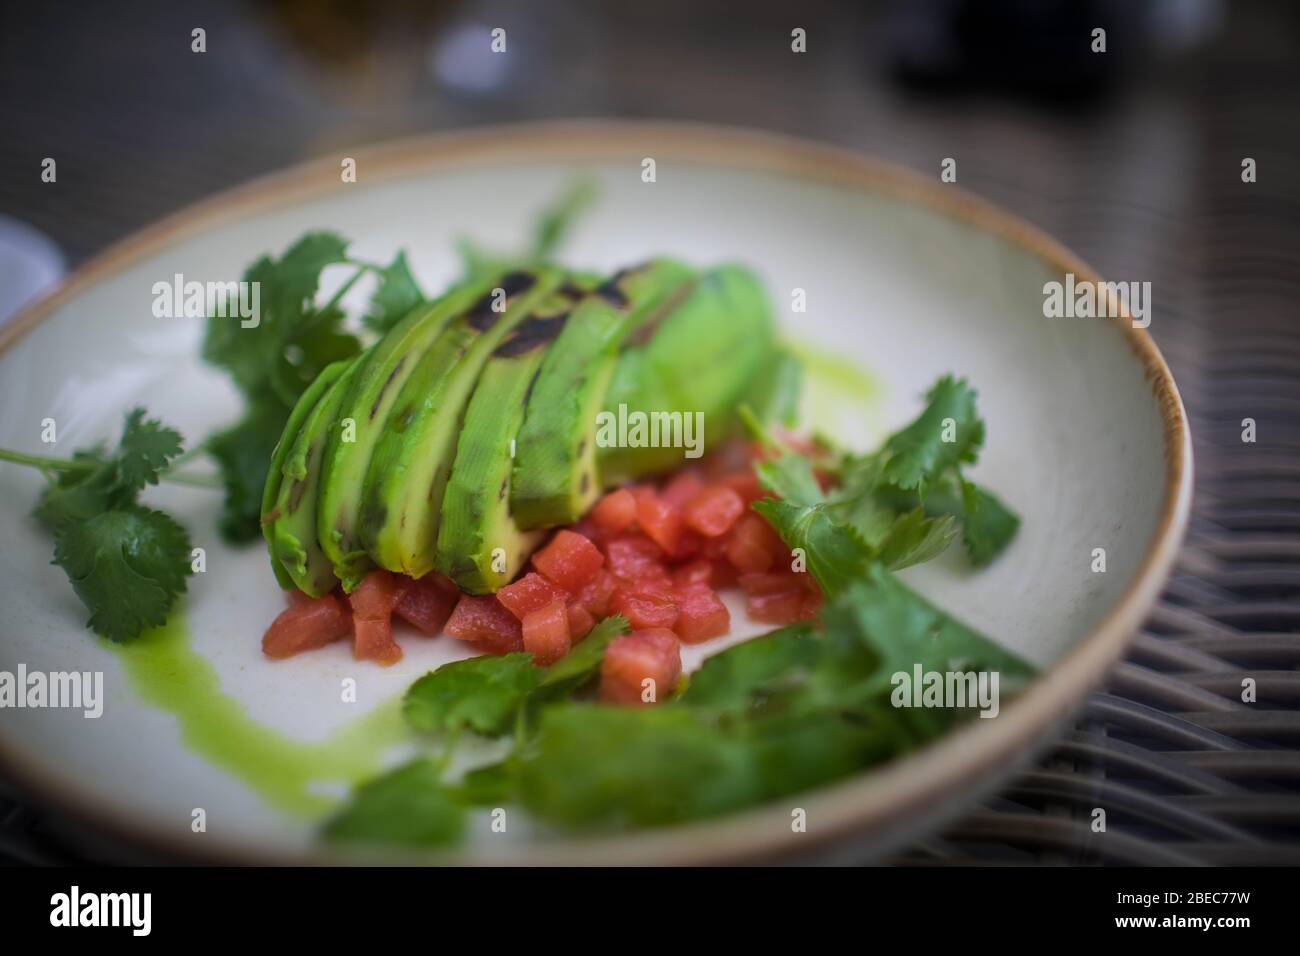 Ausgewogene Ernährung, Kochen, kulinarische und Essen Konzept - in der Nähe von Gemüse, Obst und Fleisch auf hölzernen Tisch Stockfoto